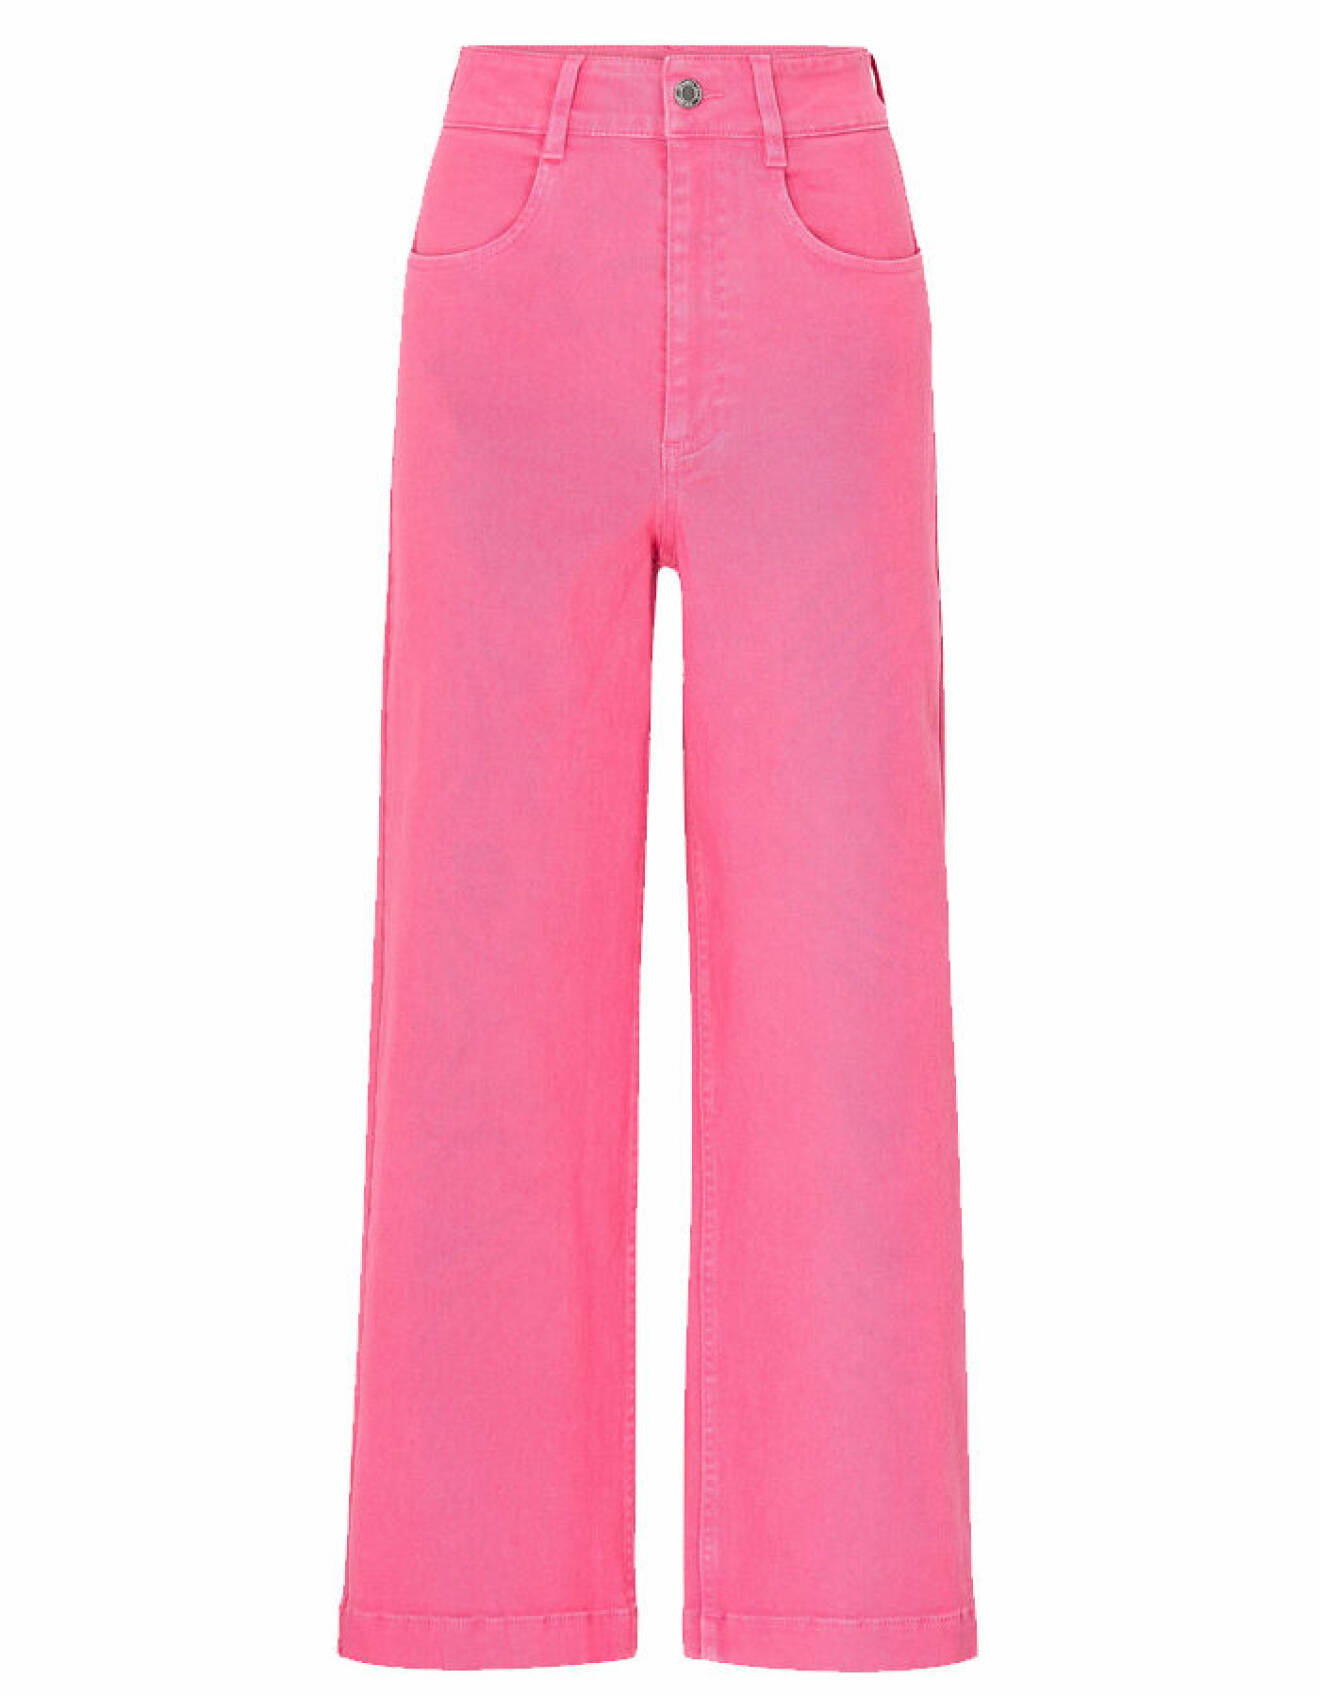 rosa byxor för dam från Ellos